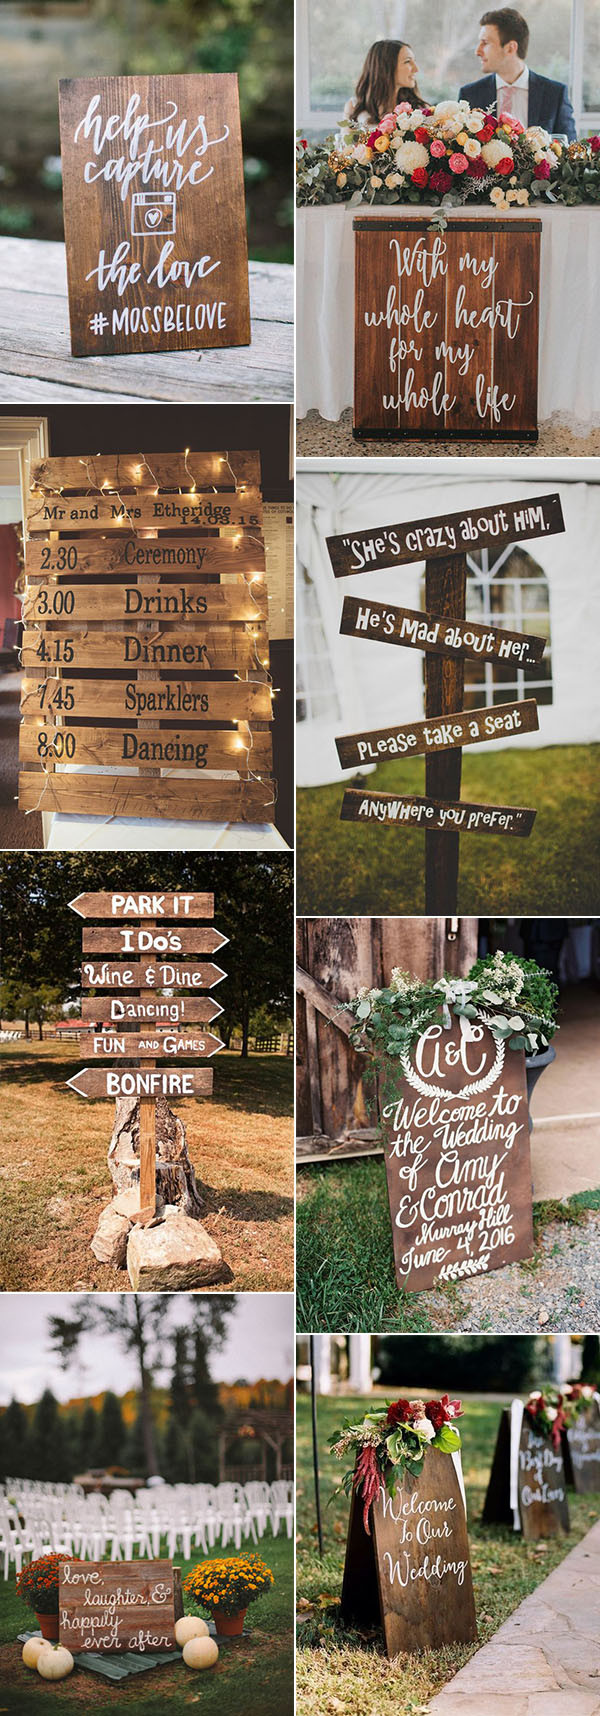 Rustic Wood Signs DIY
 Pretty Bud Friendly Wedding decorating Ideas 30 Easy to